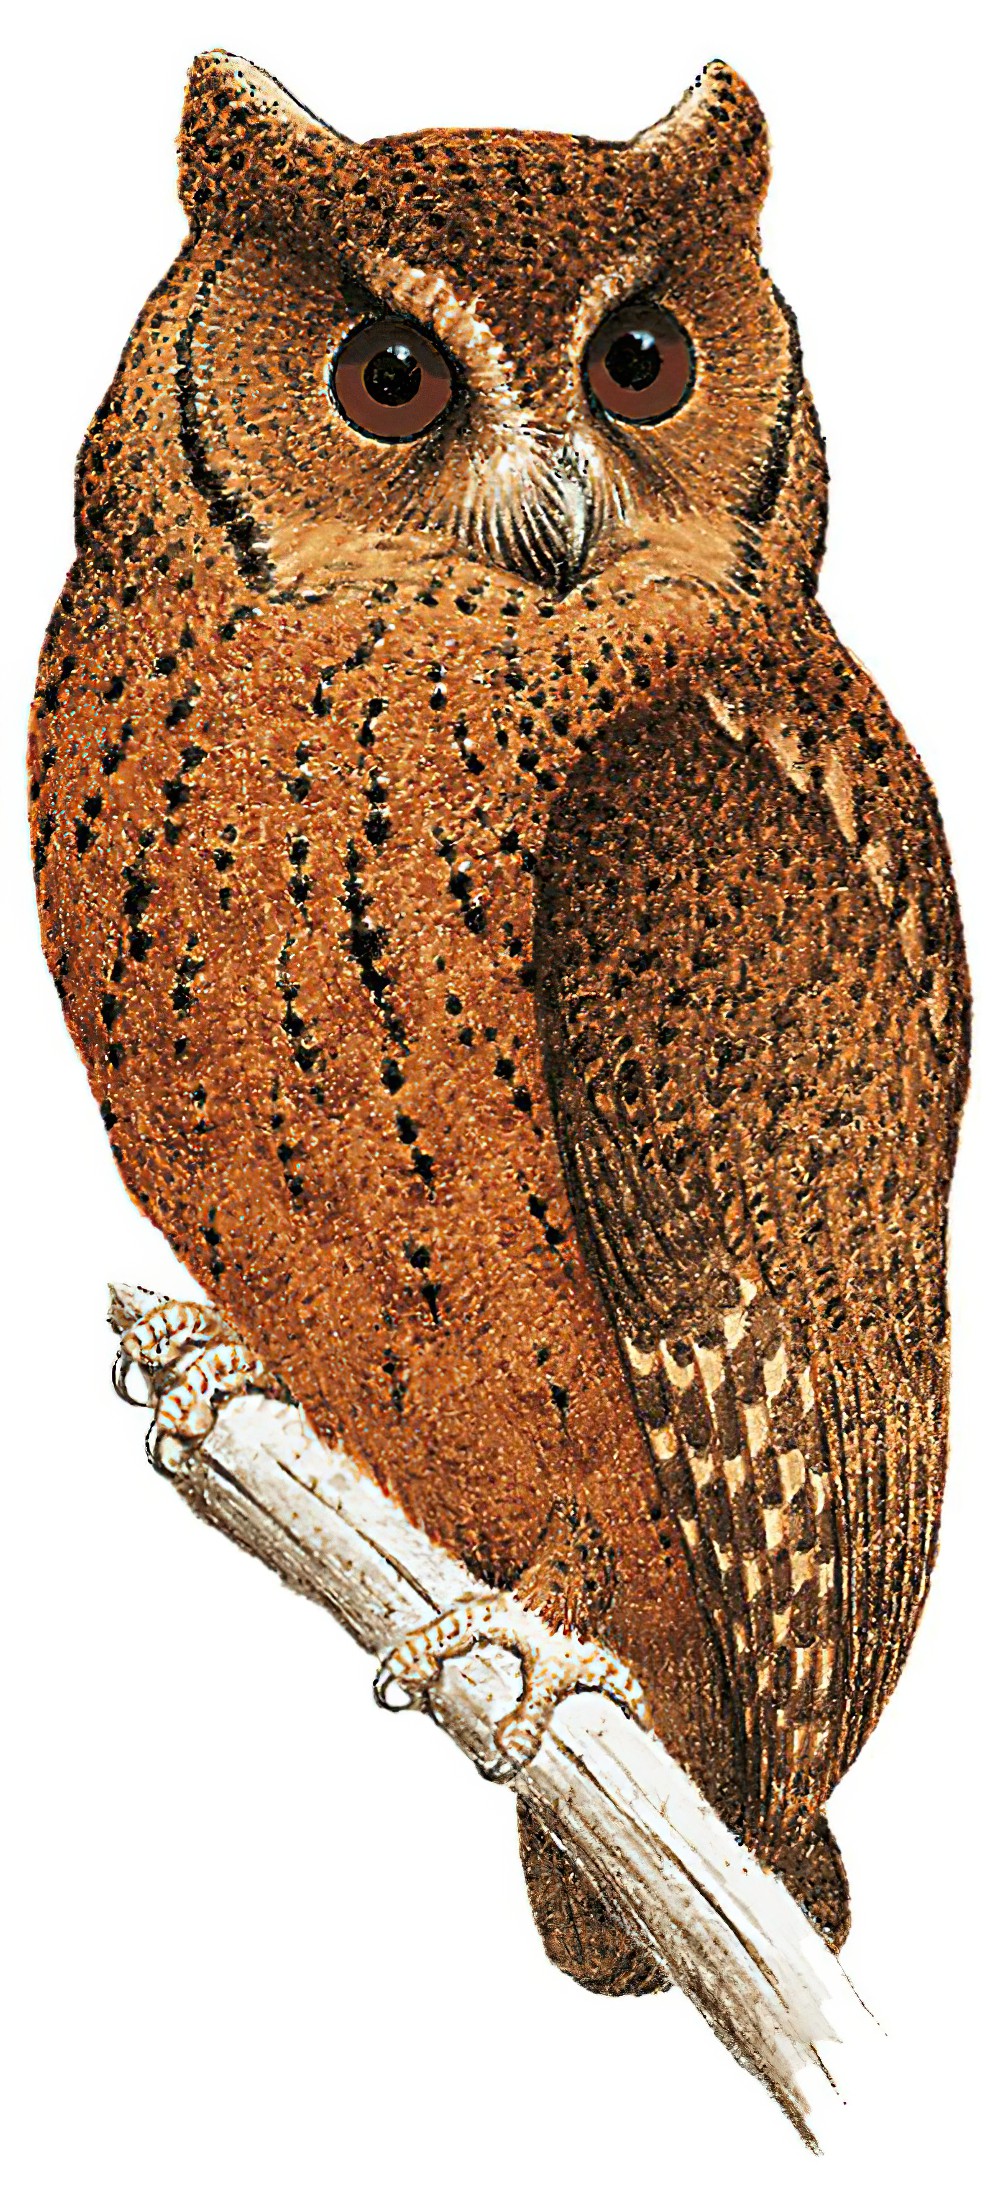 明岛领角鸮 / Mentawai Scops Owl / Otus mentawi